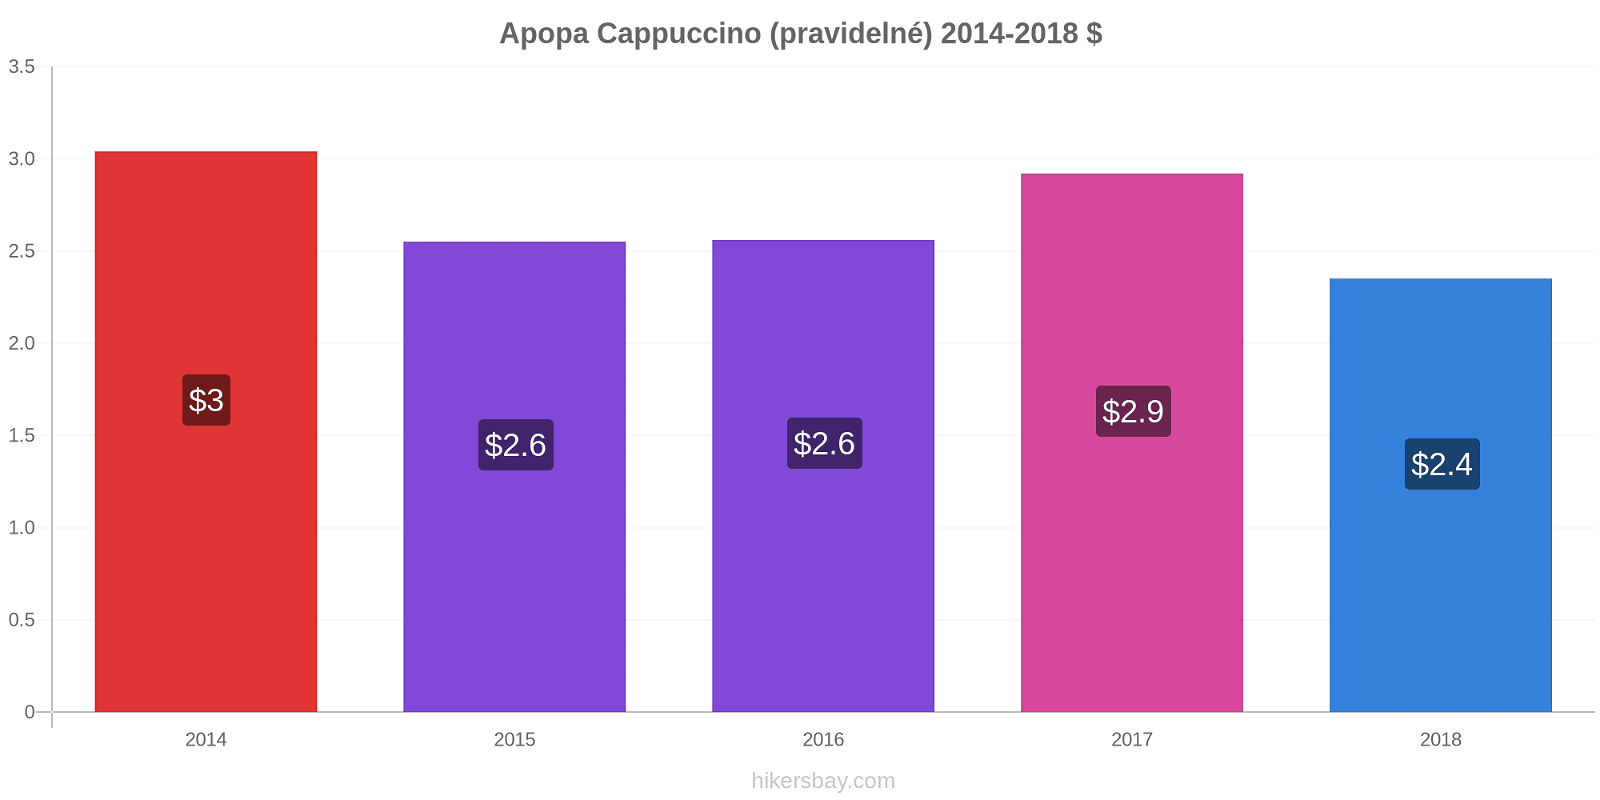 Apopa změny cen Cappuccino (pravidelné) hikersbay.com